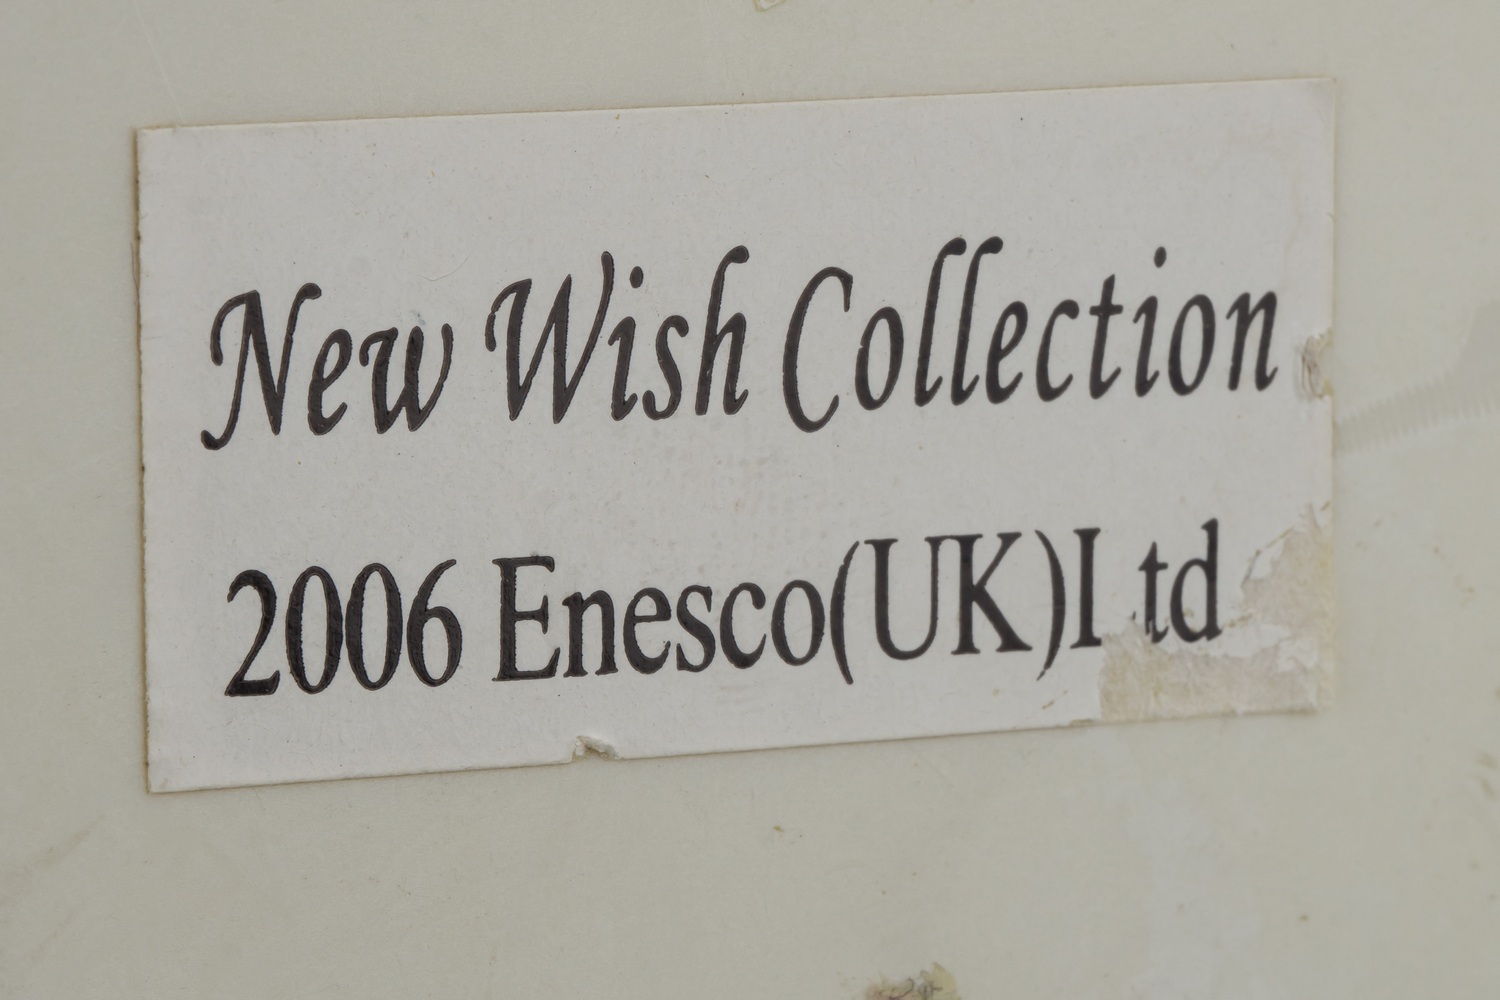 Кукла «Дама с розами, аллегория Весны». <br>Великобритания, фирма Enesco, серия «New Wish Collection»,  2006 г.